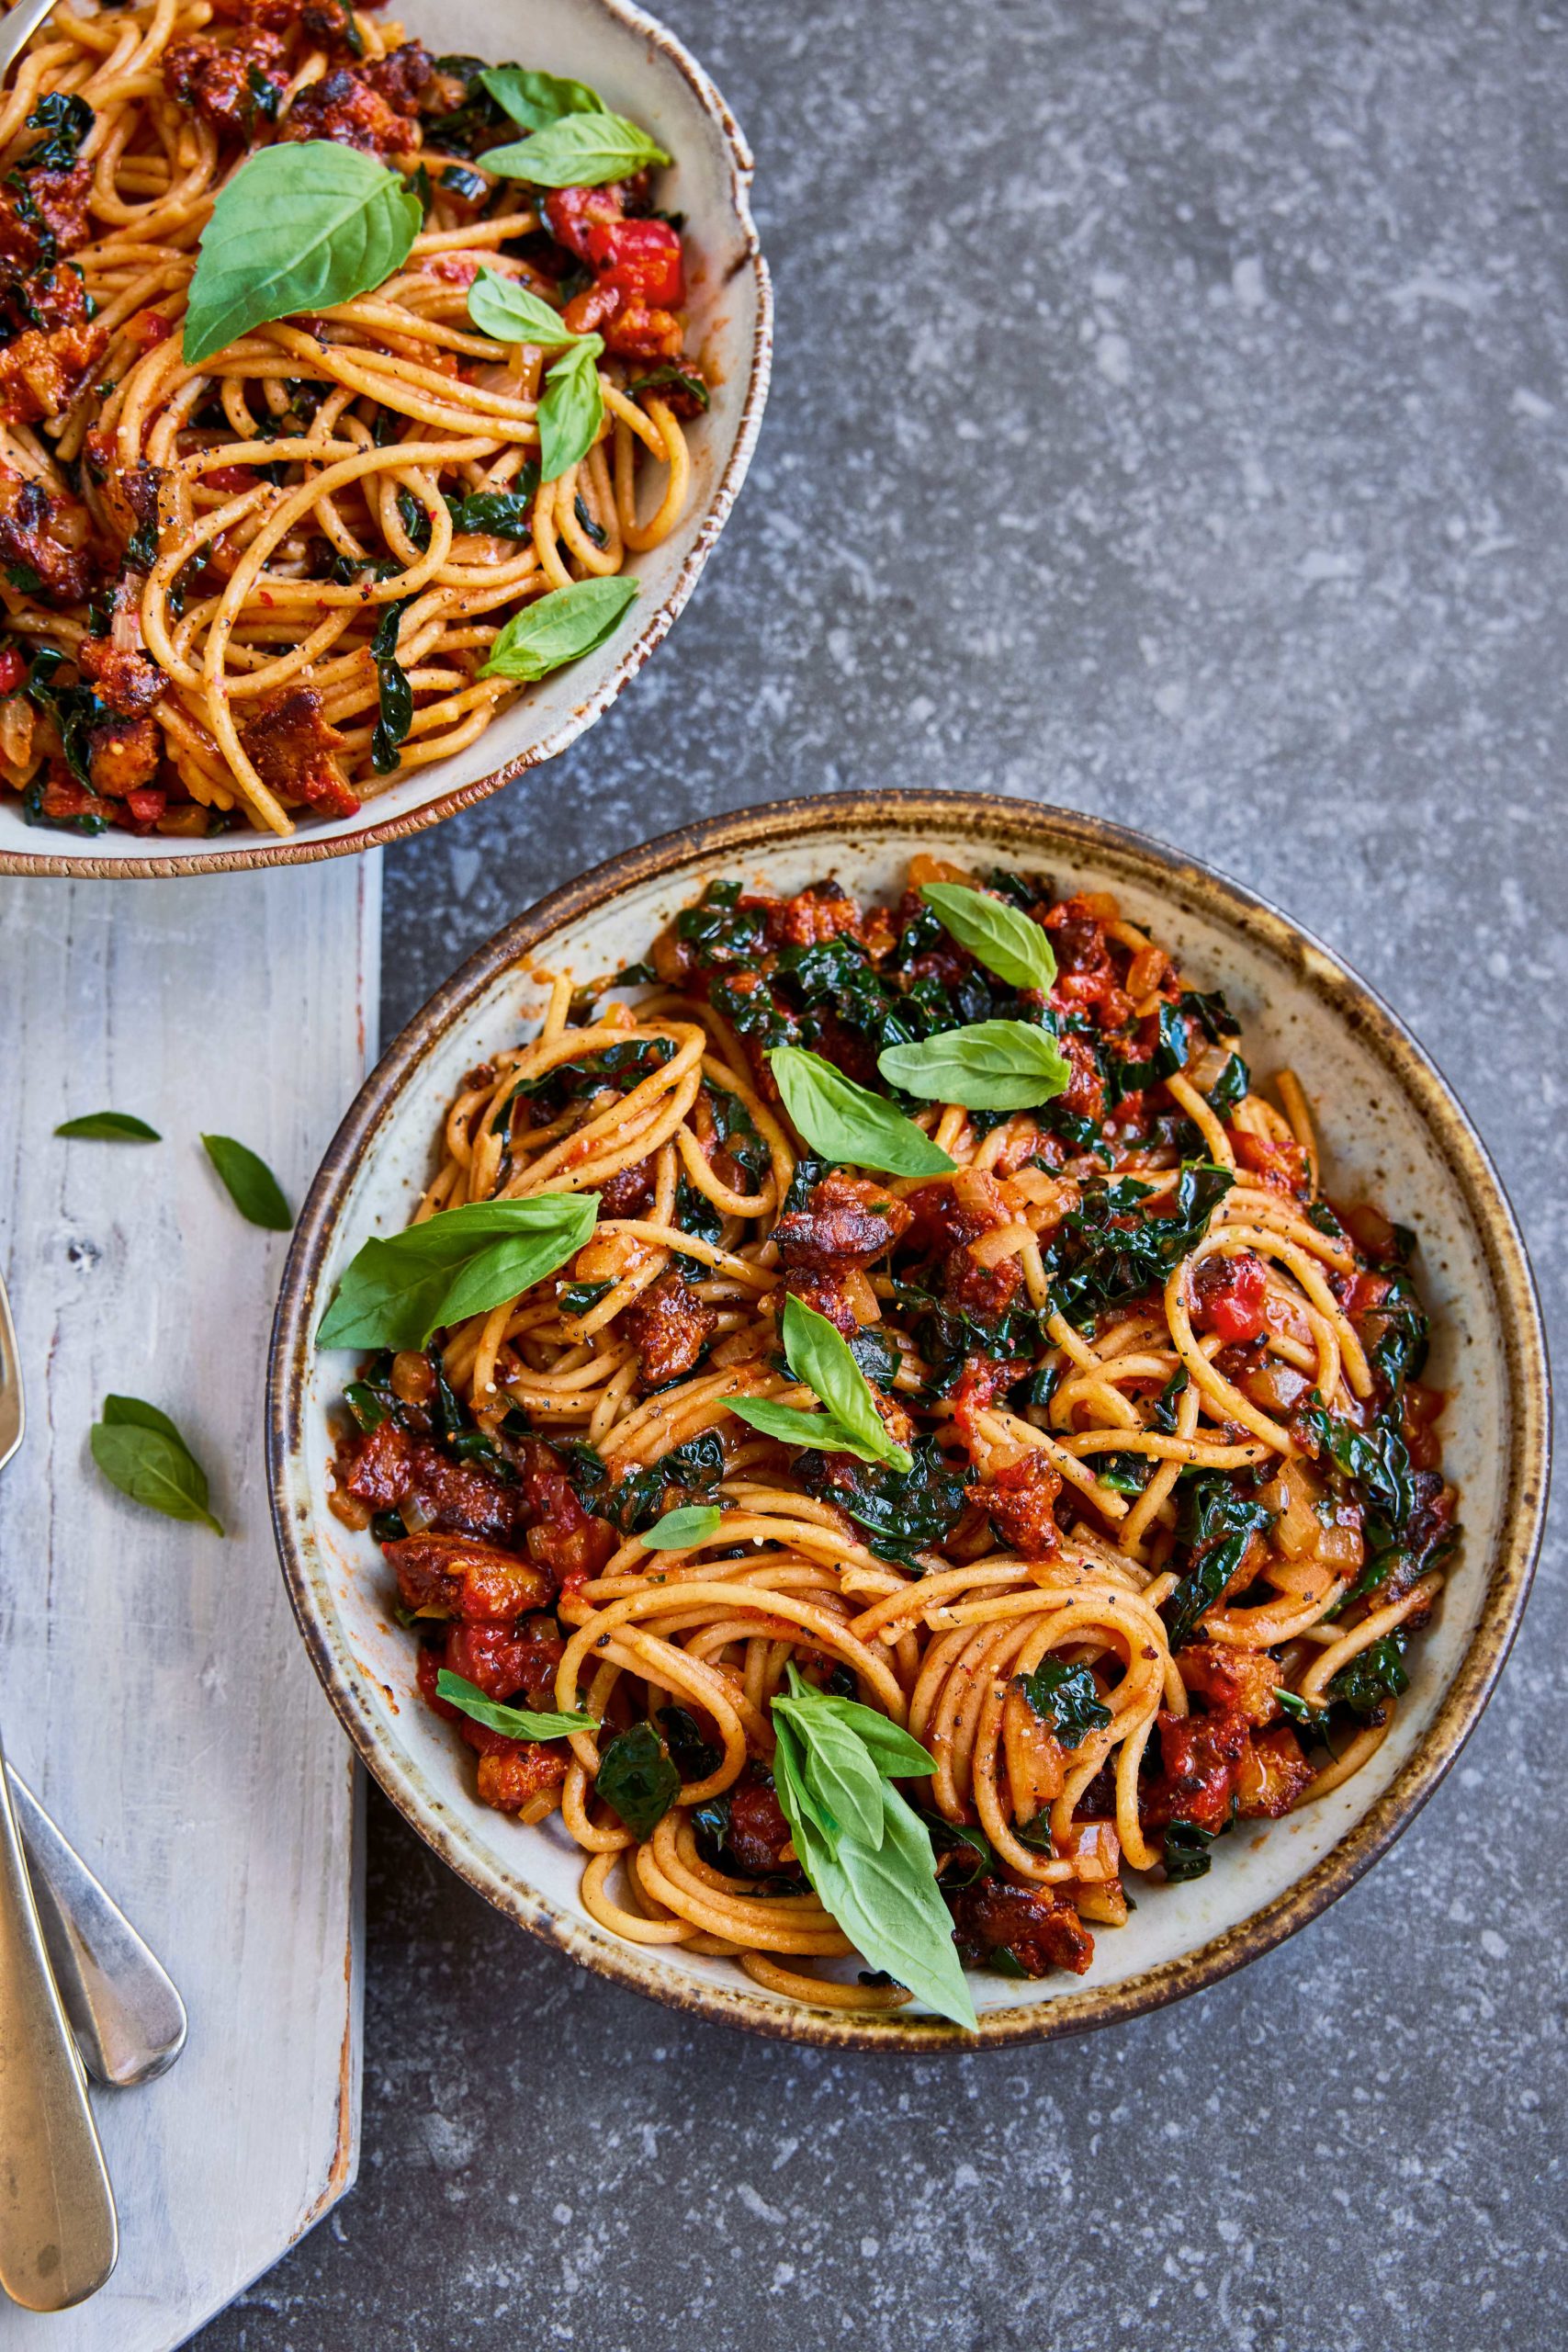 Dr Rupy's vegan Italian spaghetti